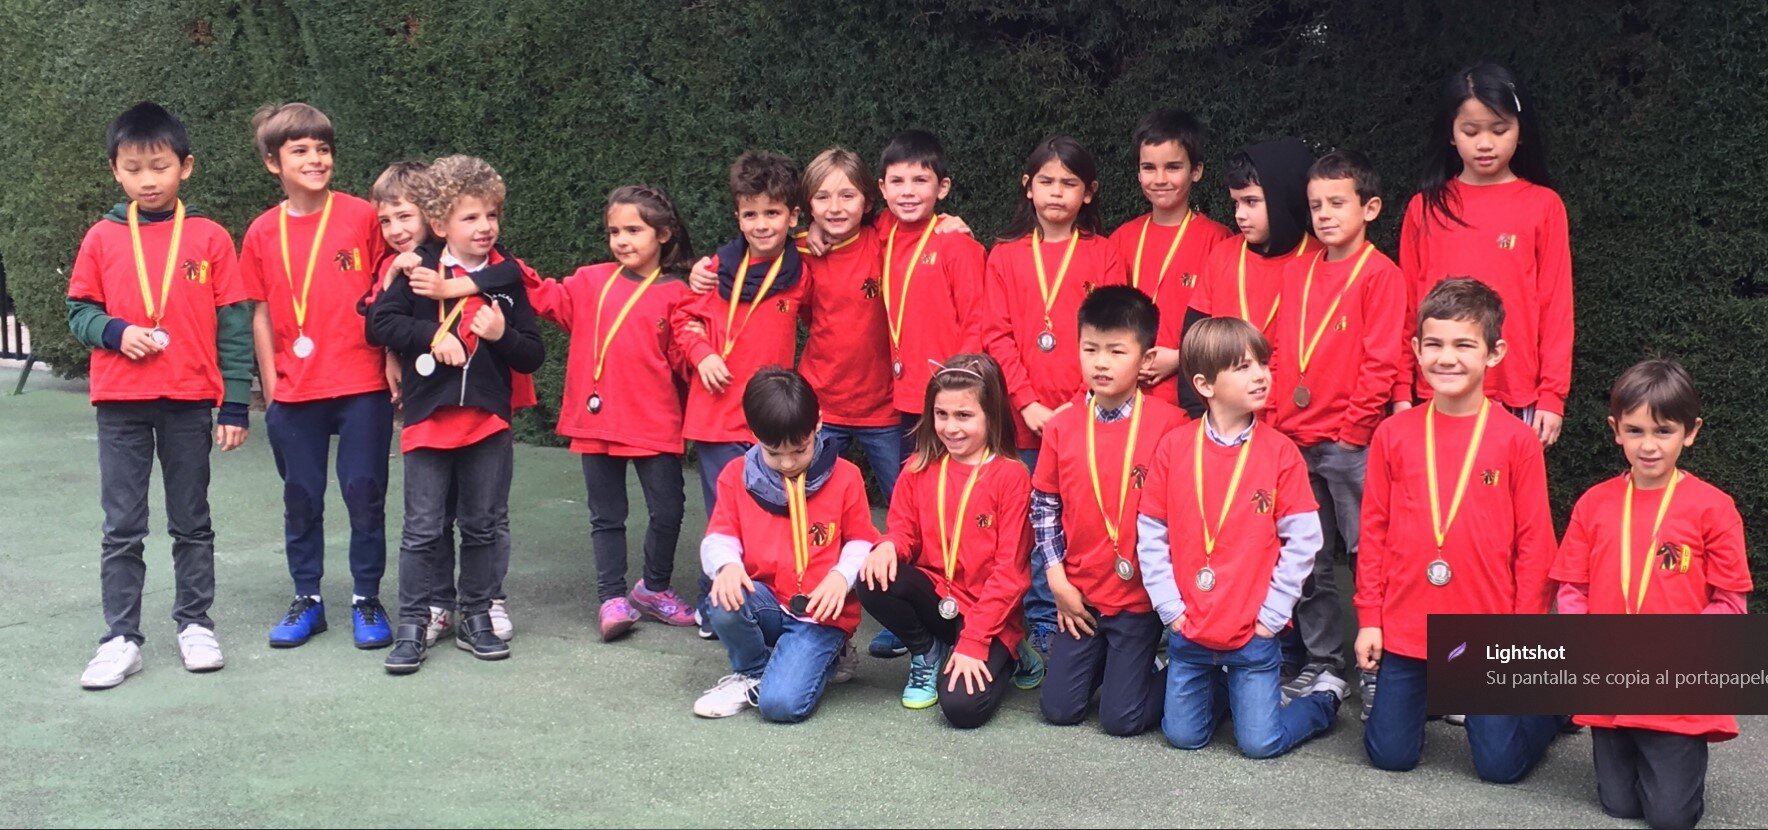 Club de ajedrez blanco y negro, torneos de ajedrez en Madrid. Una foto de equipo en un torneo escolar de ajedrez de 2019.